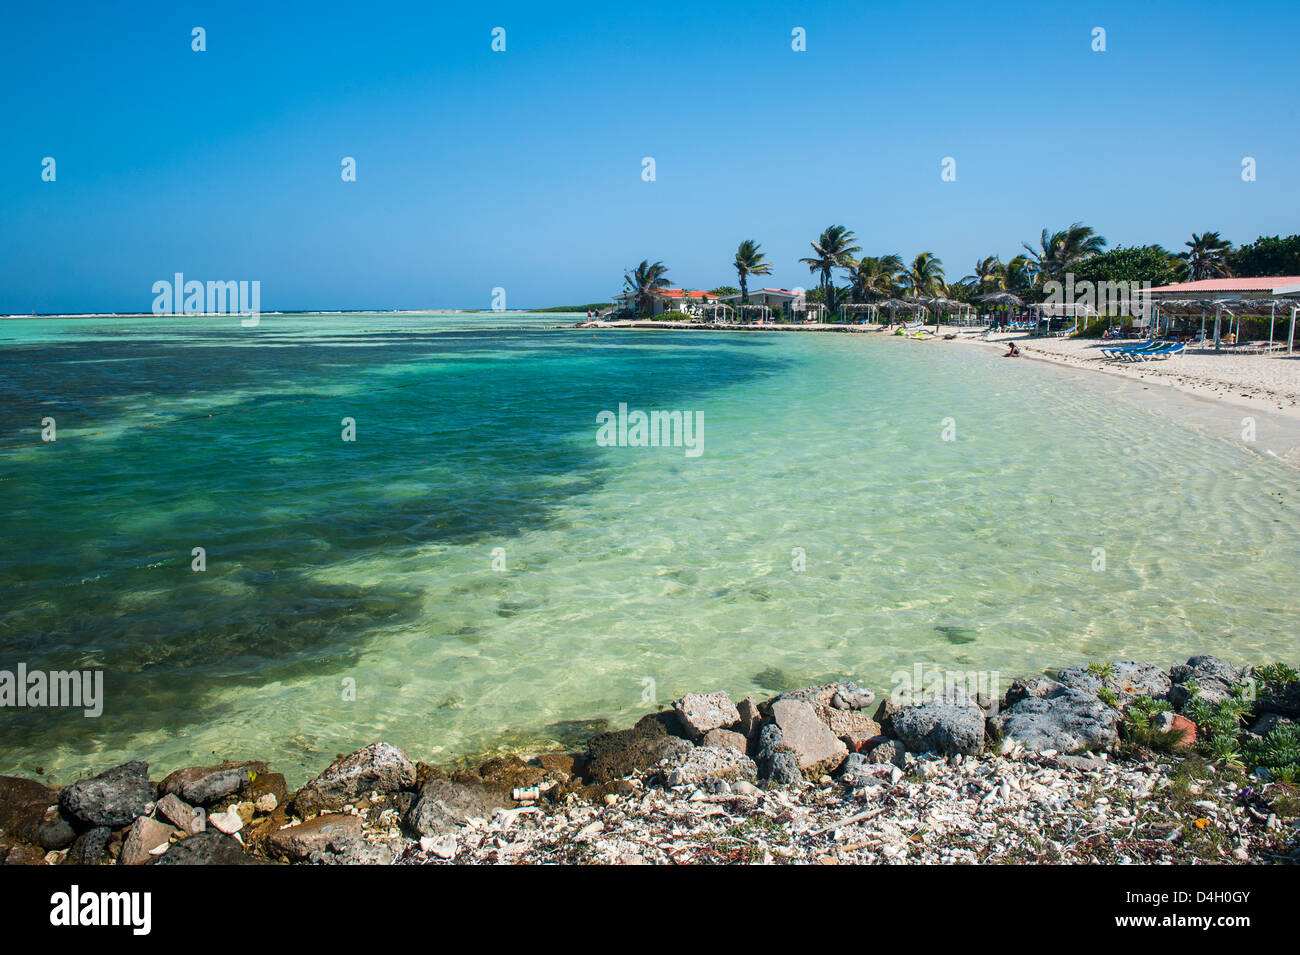 L'eau turquoise de la baie de Bac, Bonaire, Îles ABC, Netherlands Antilles, Caraïbes Banque D'Images